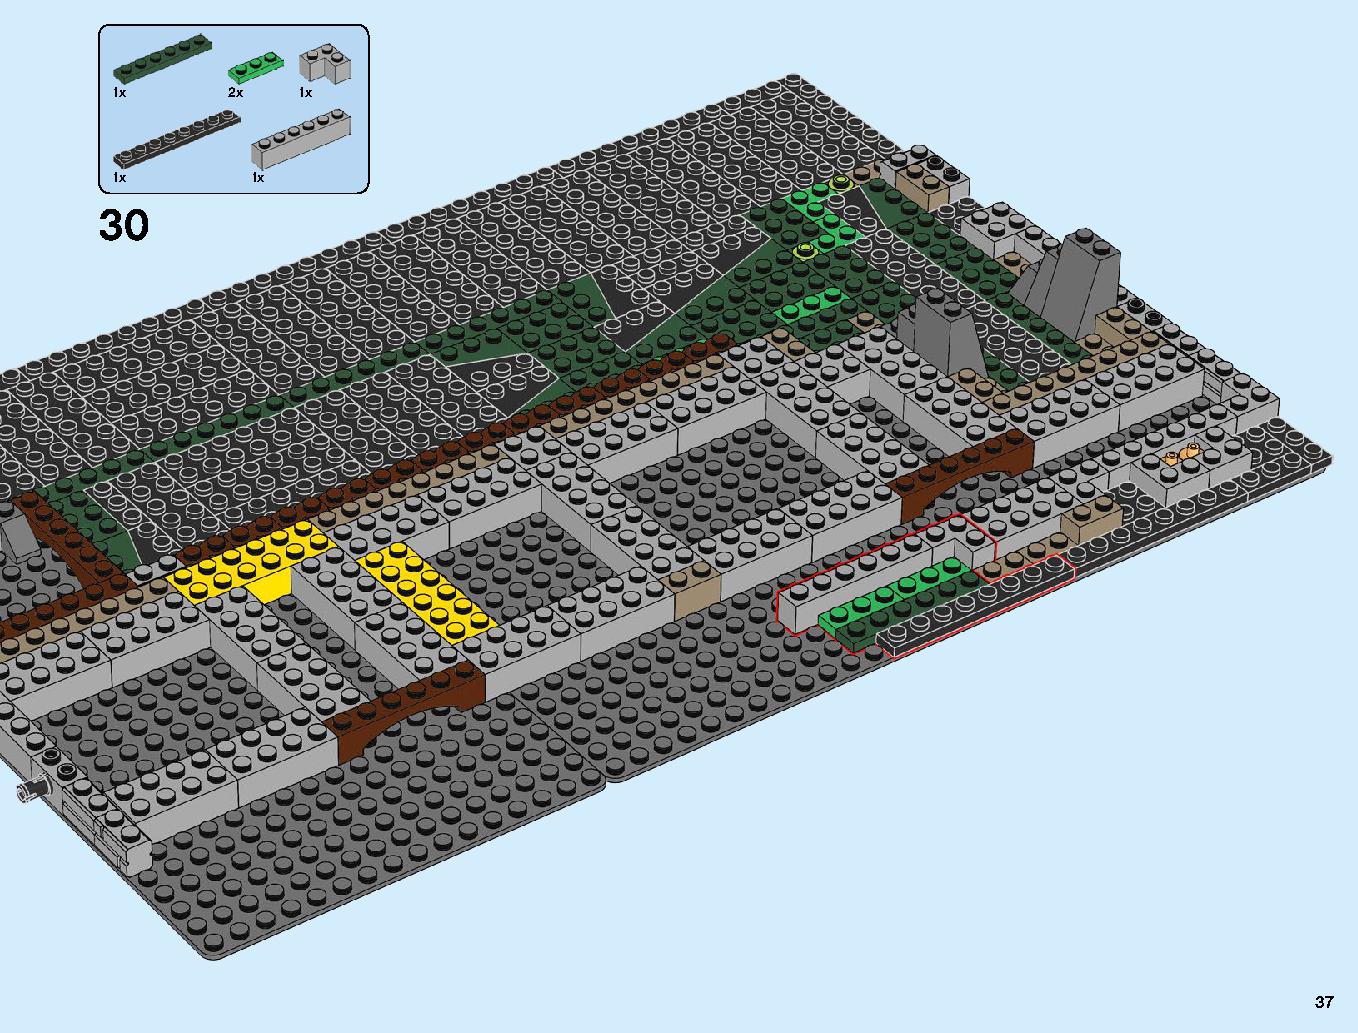 ニンジャゴーシティ・ポートパーク 70657 レゴの商品情報 レゴの説明書・組立方法 37 page